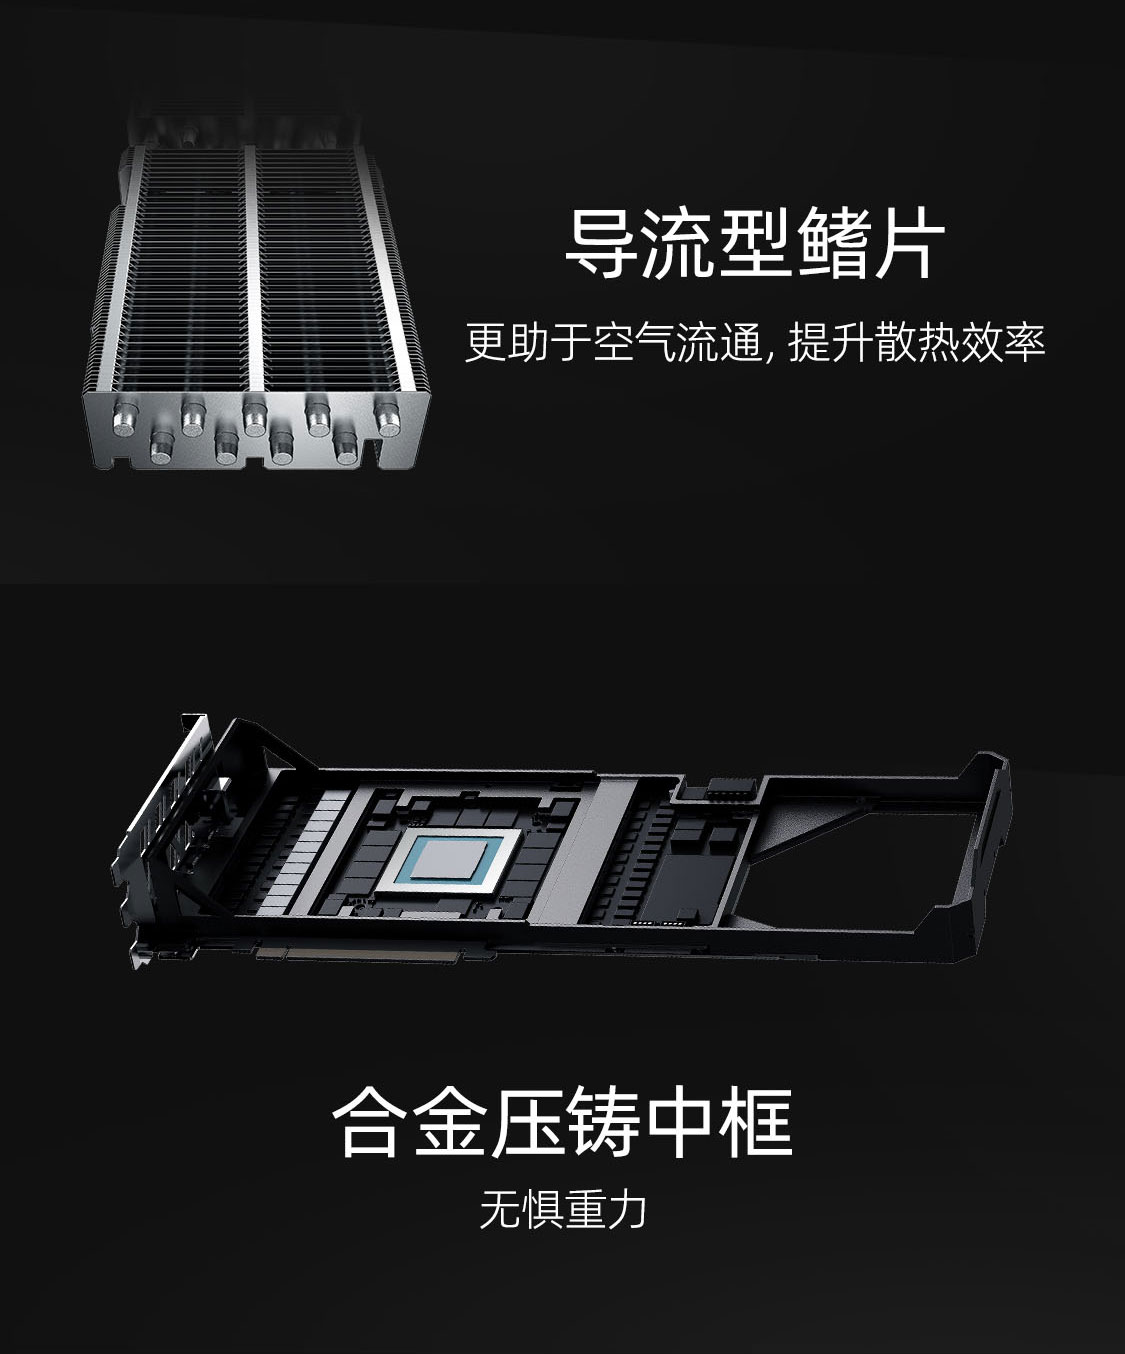 七彩虹官网-产品-iGame GeForce RTX 3070 Ti Vulcan OC 8G